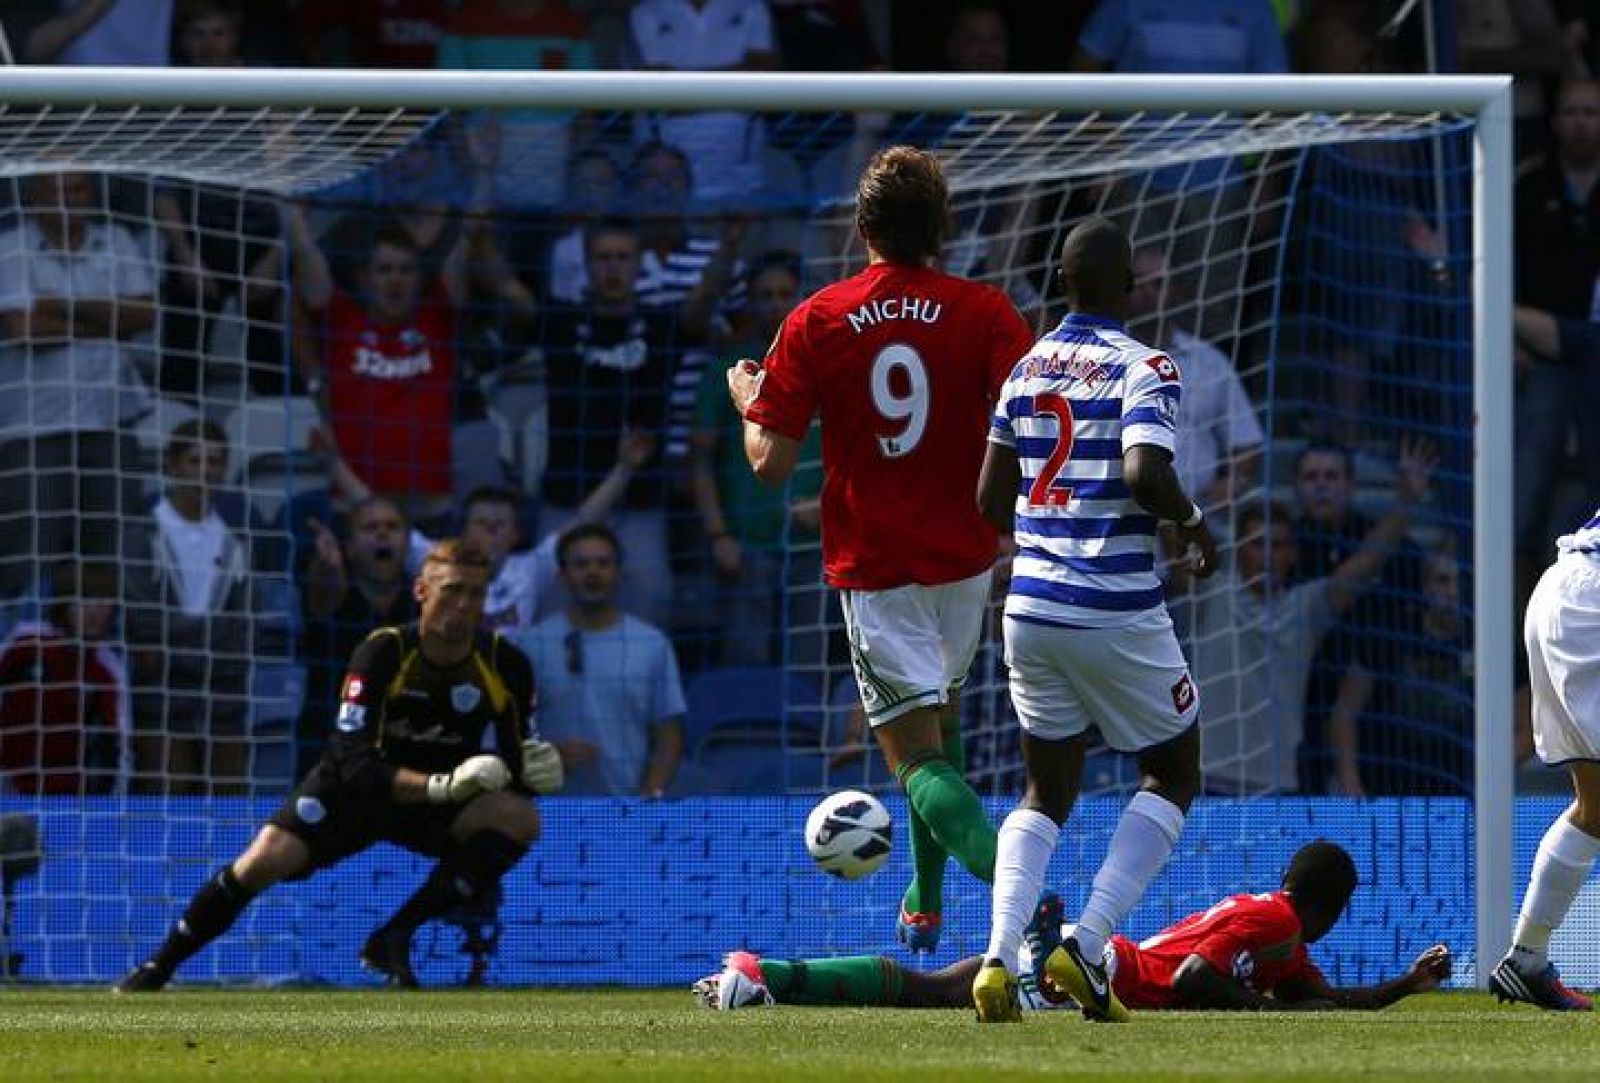 El delantero español Michu anota el primer gol del Swansea frente al Queen's Park Rangers